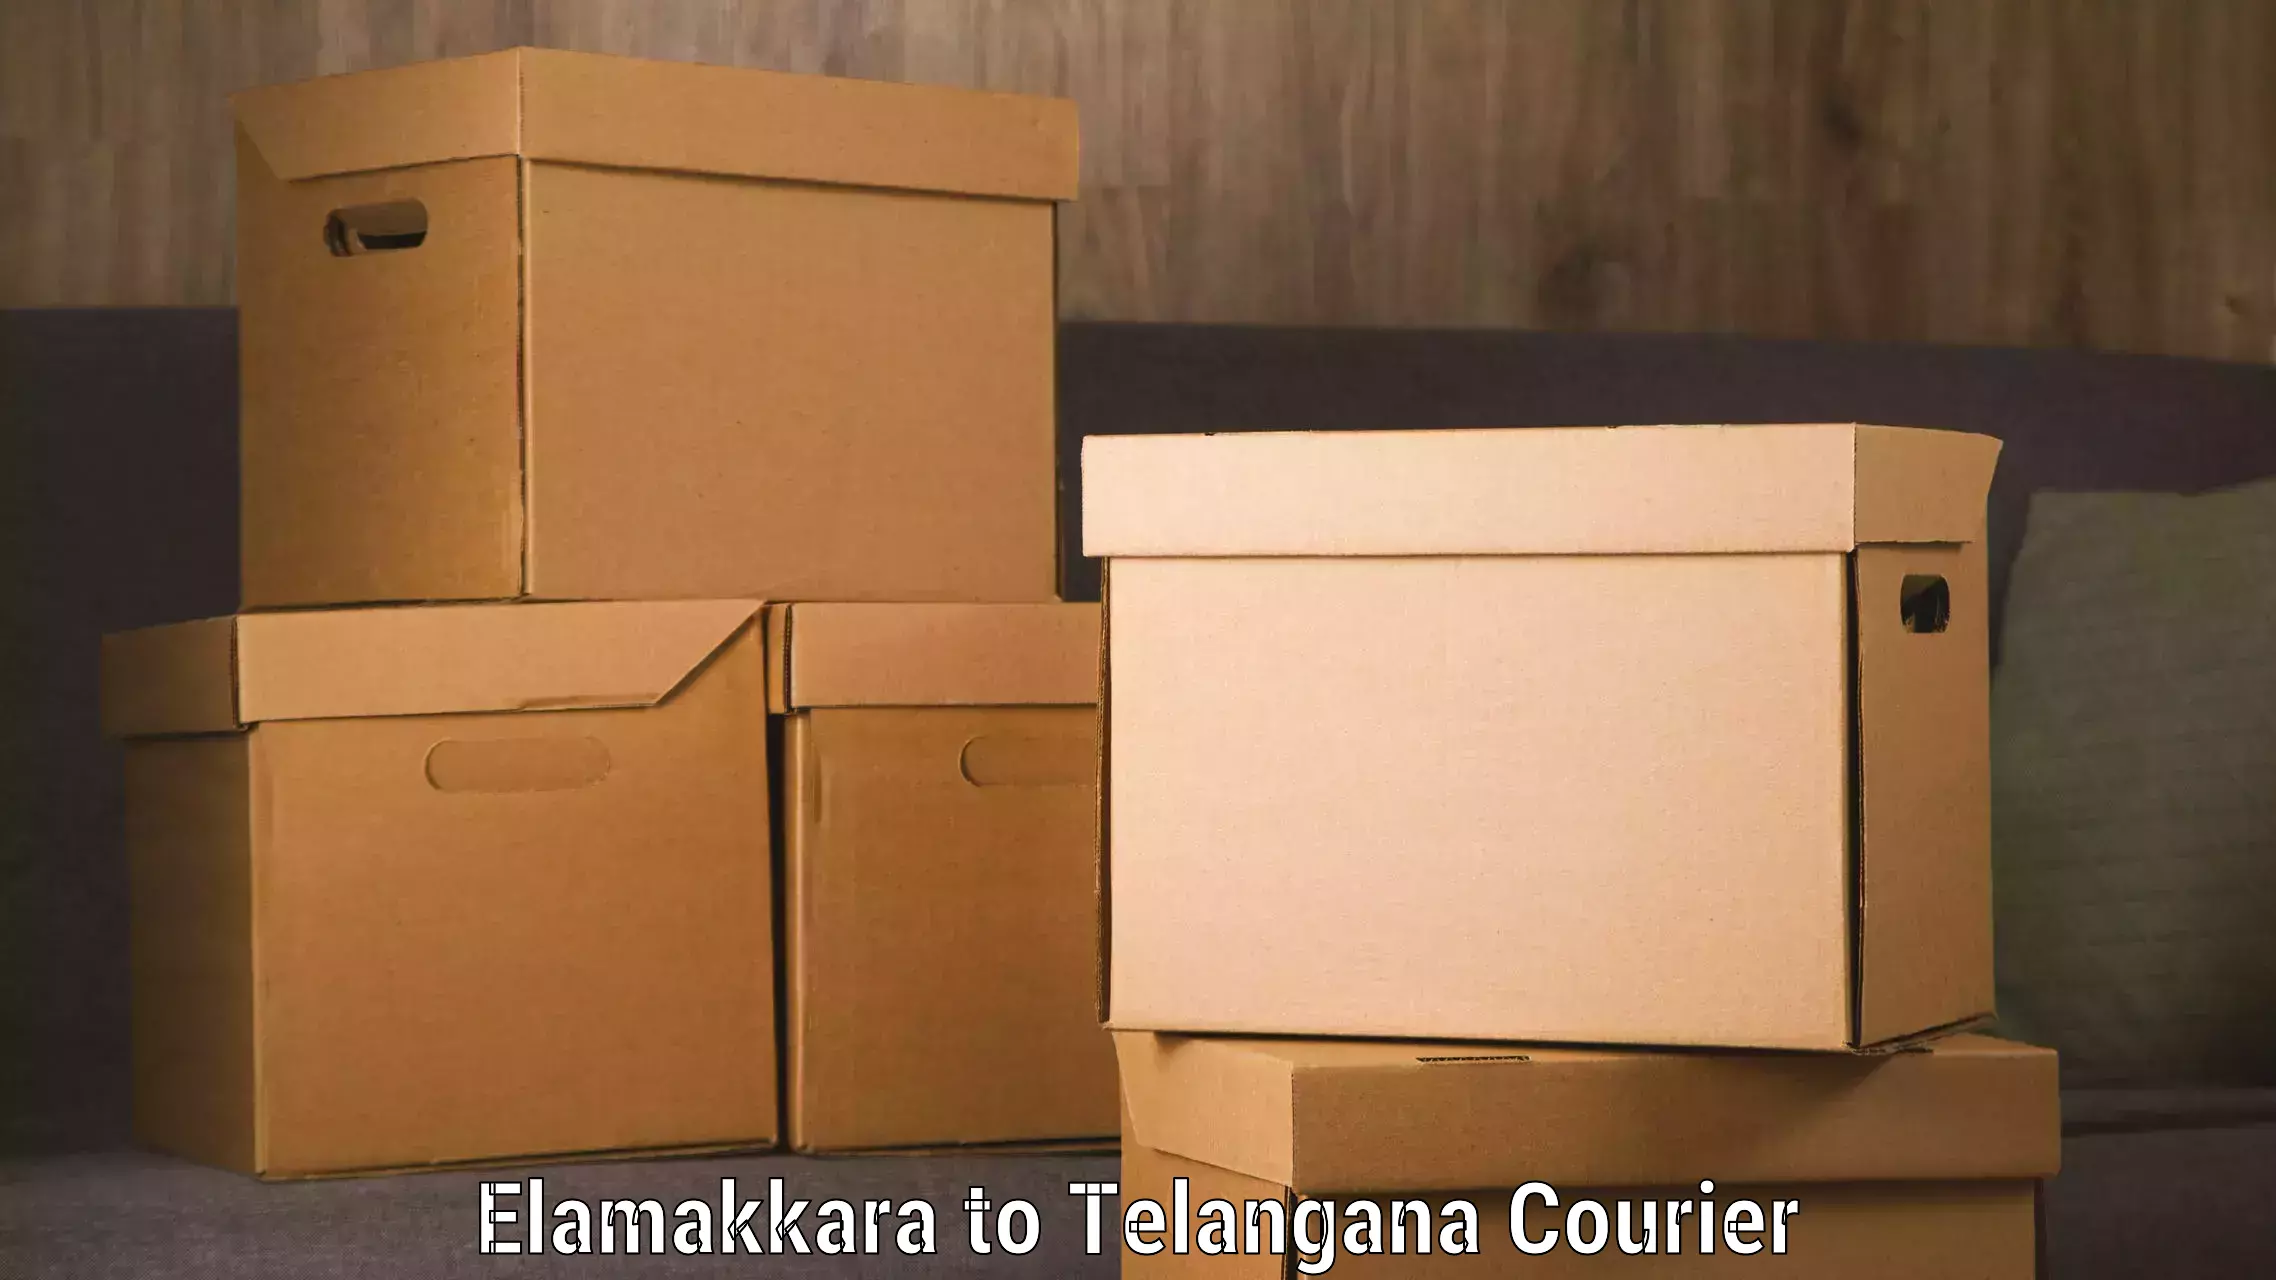 Global courier networks Elamakkara to Yerrupalem